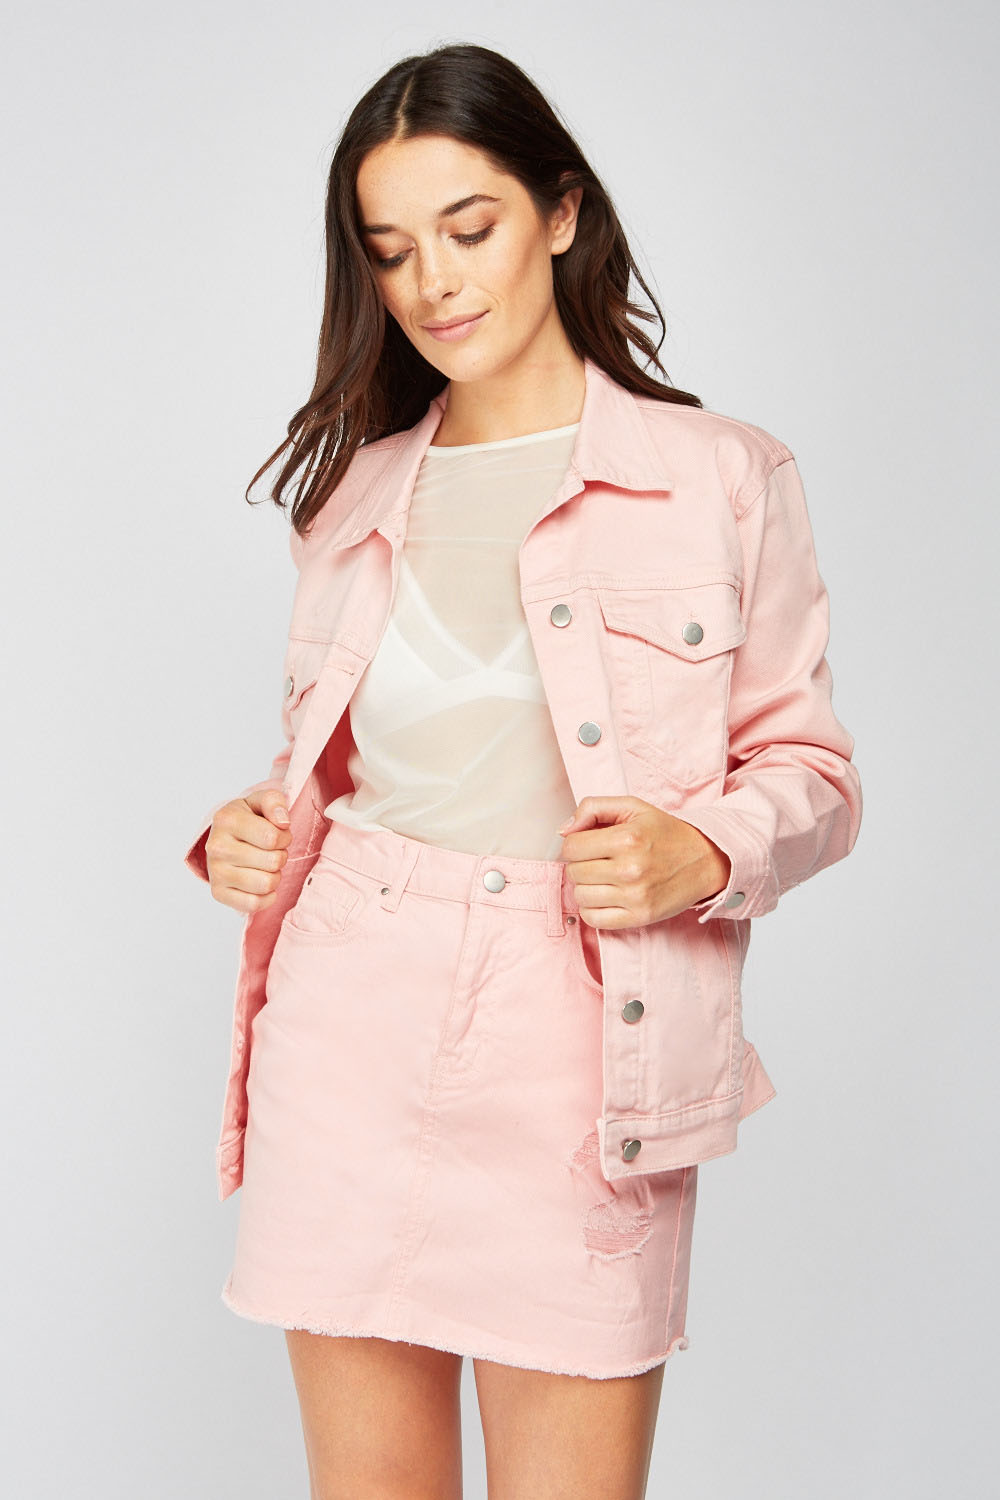 Light Pink Denim Jacket - Just $7